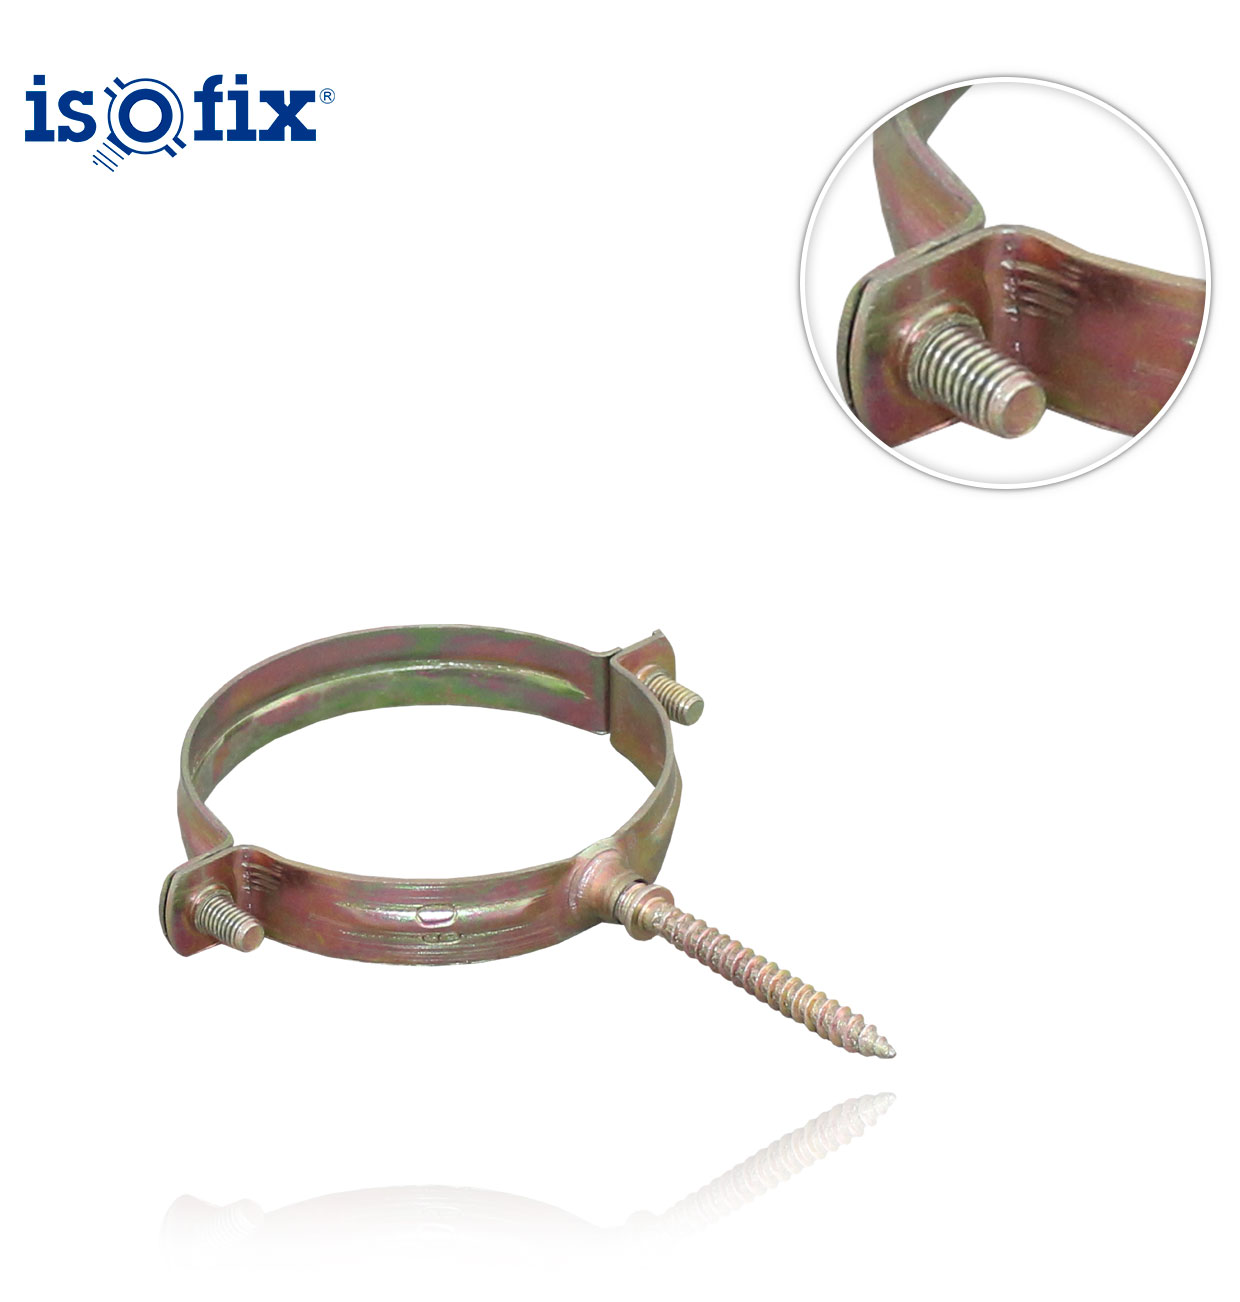 D60 ISOFIX CLAMP WITH LAG SCREW